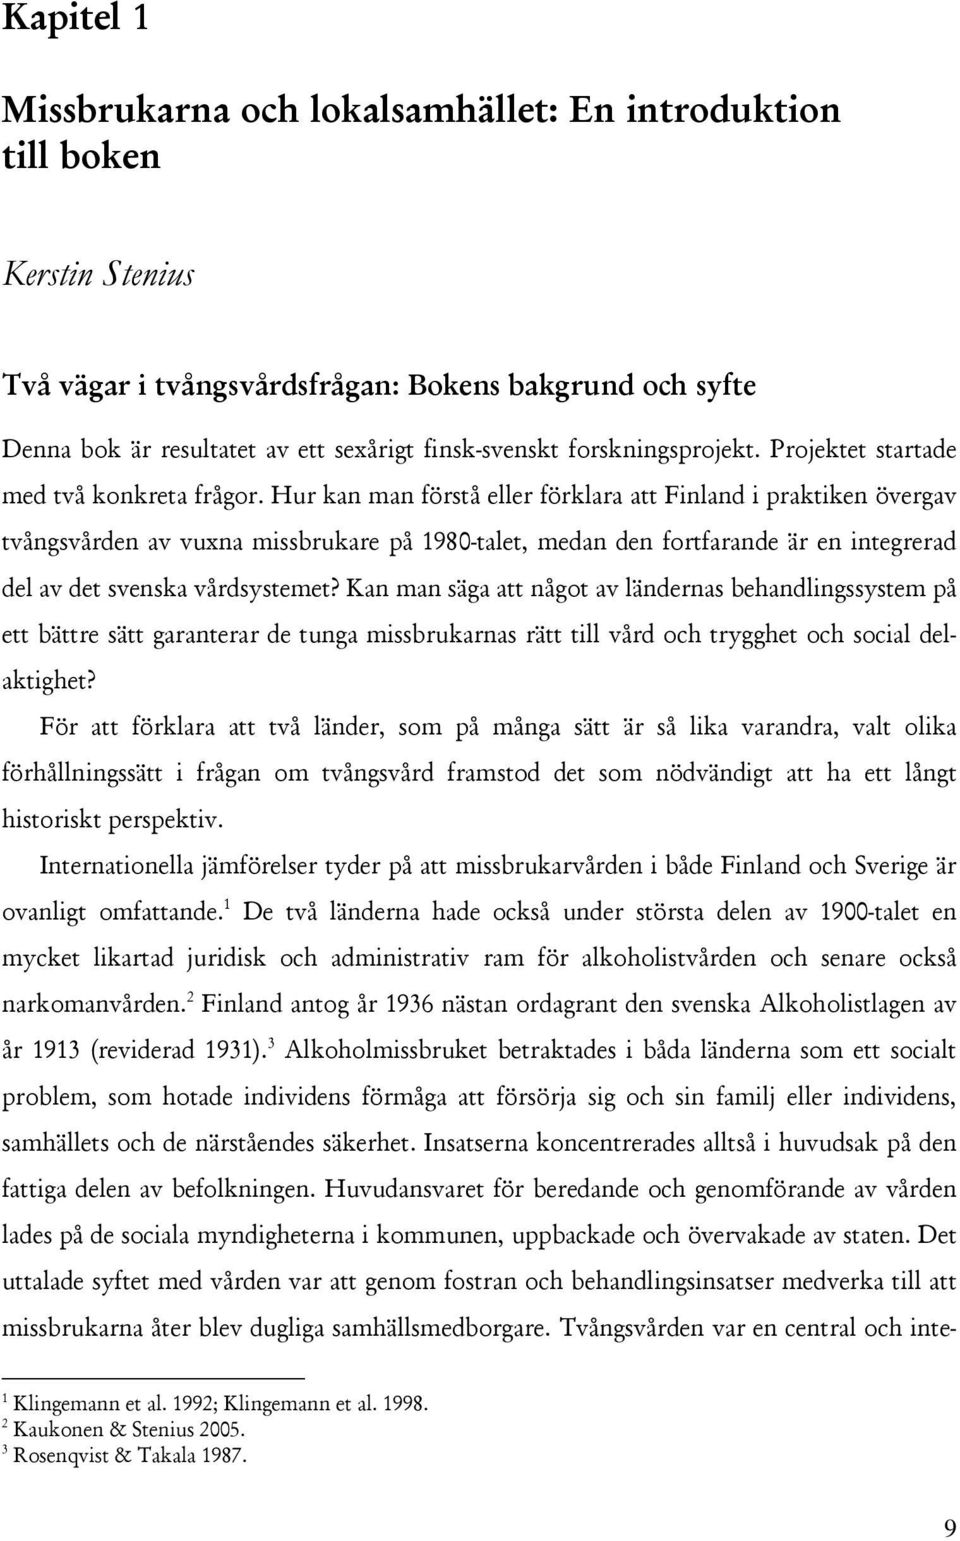 Hur kan man förstå eller förklara att Finland i praktiken övergav tvångsvården av vuxna missbrukare på 1980-talet, medan den fortfarande är en integrerad del av det svenska vårdsystemet?